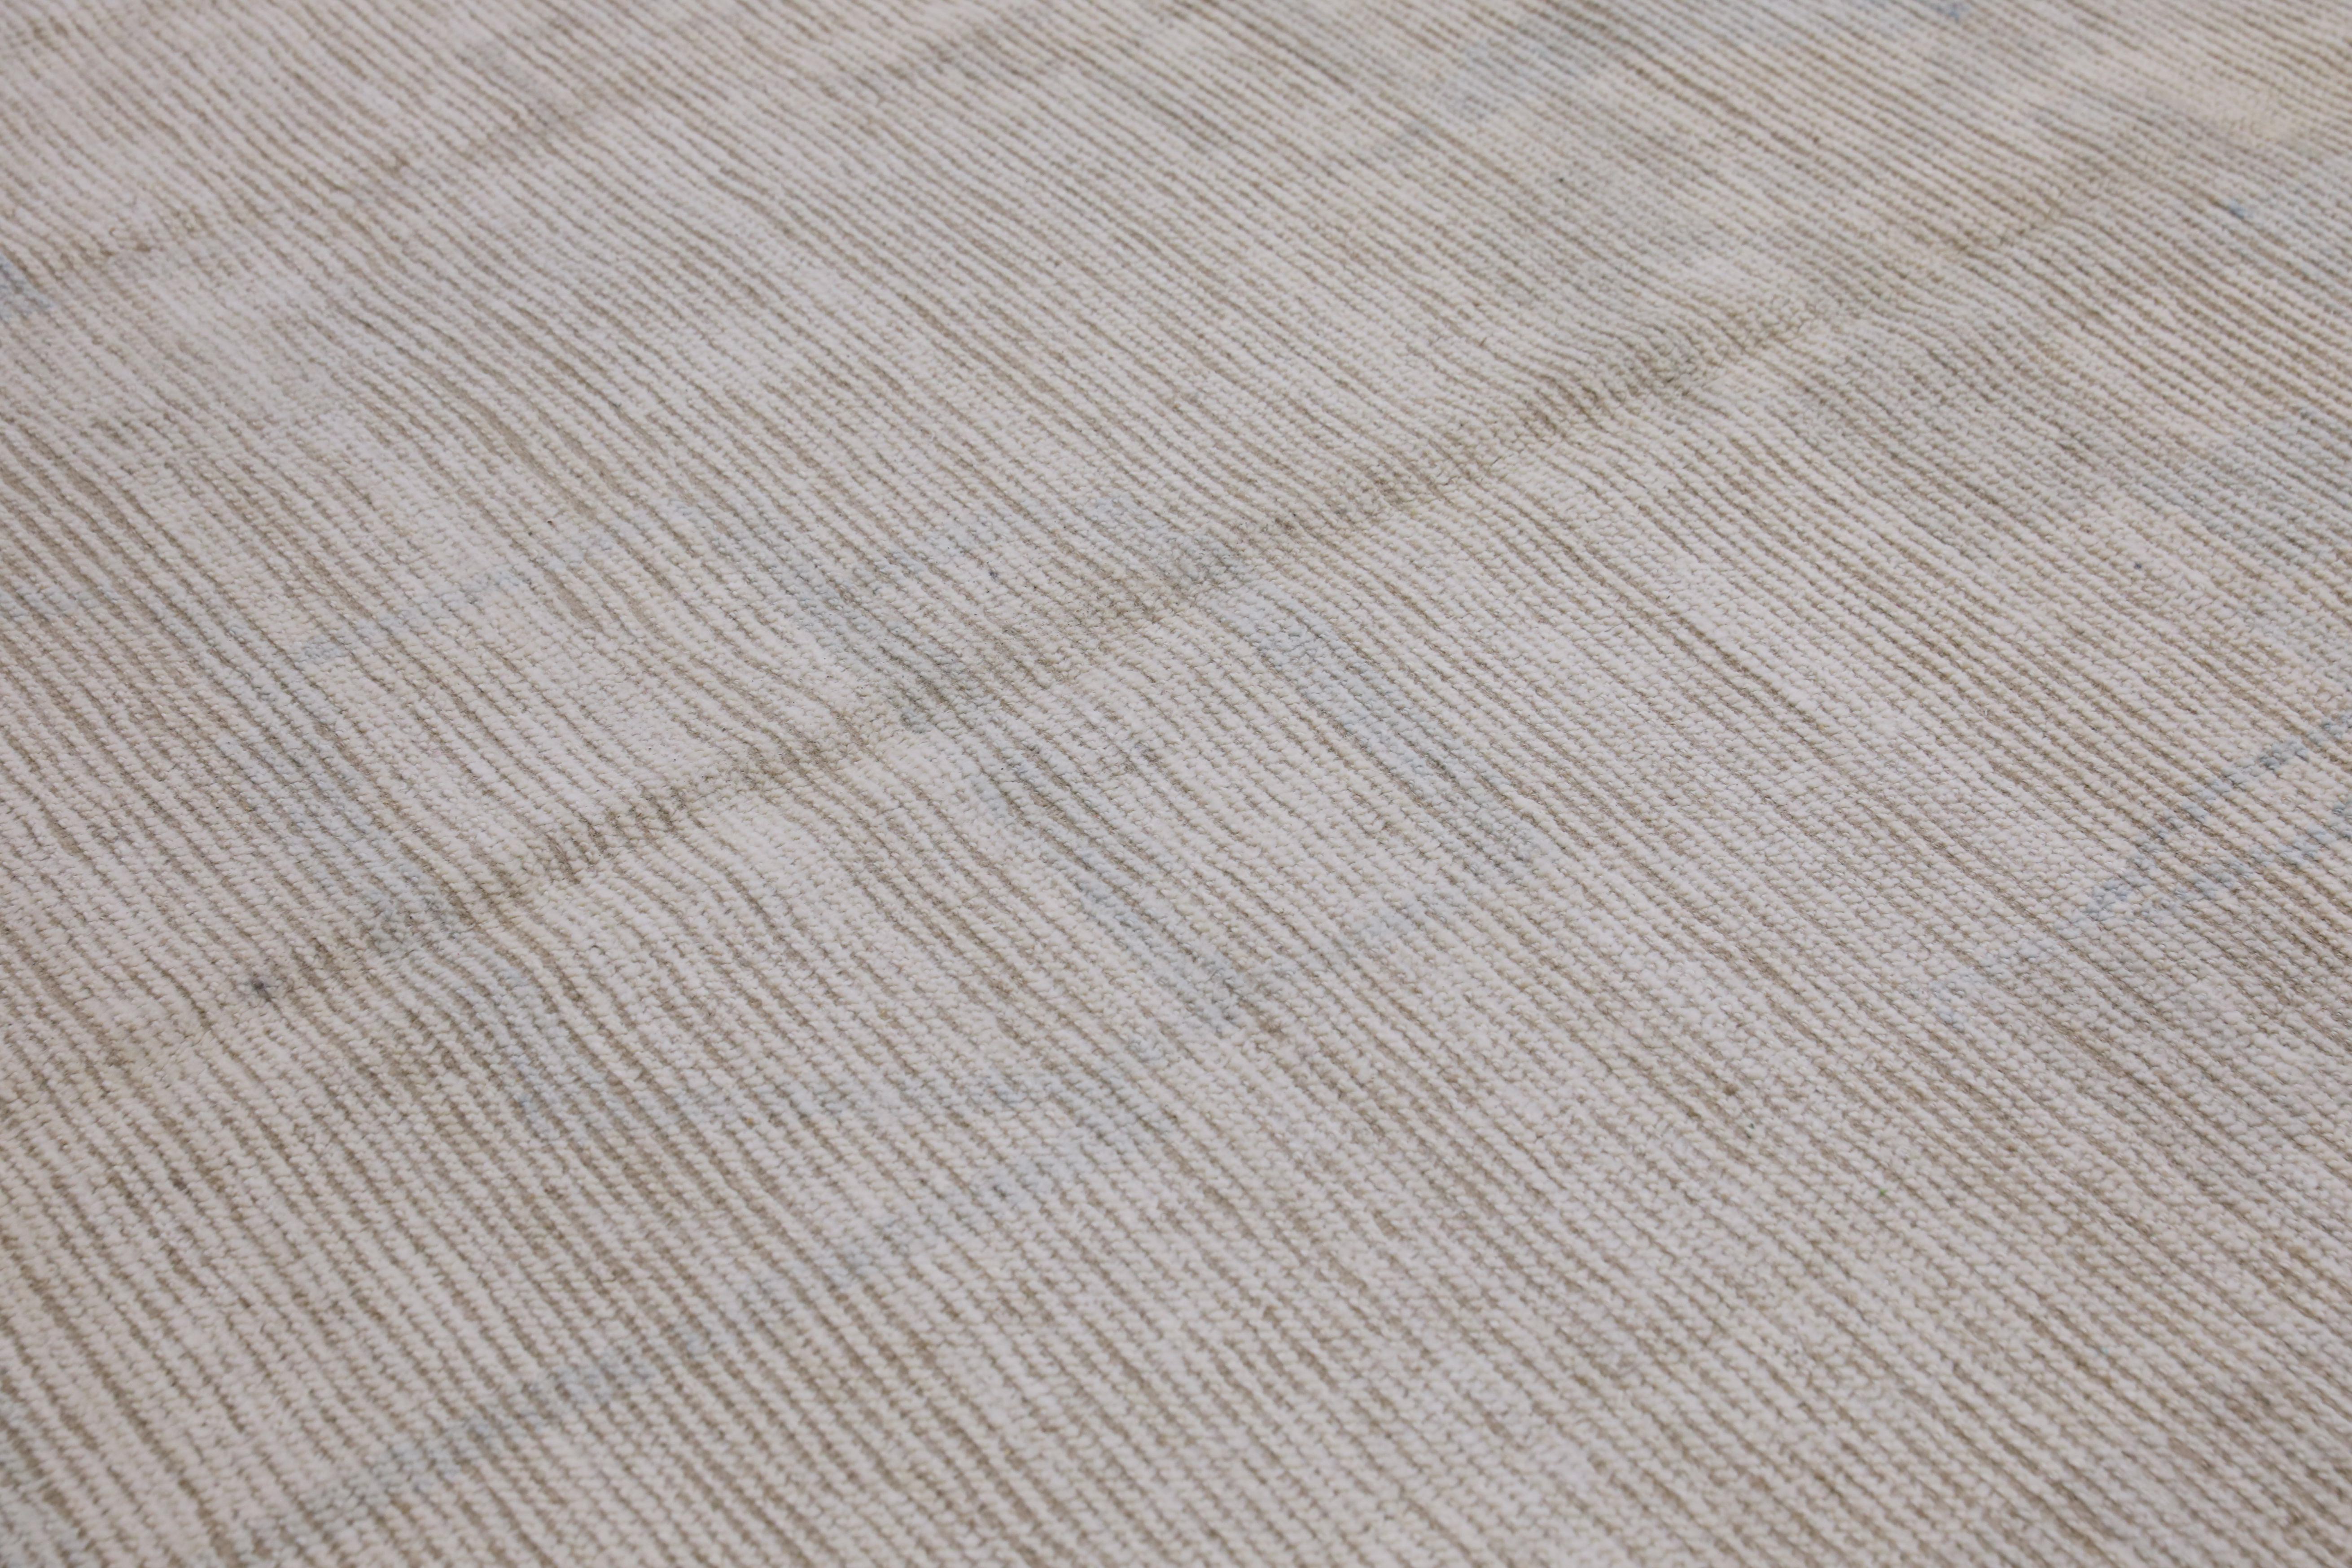  Handmade Wool Tulu Rug in Geometric Design 10'2